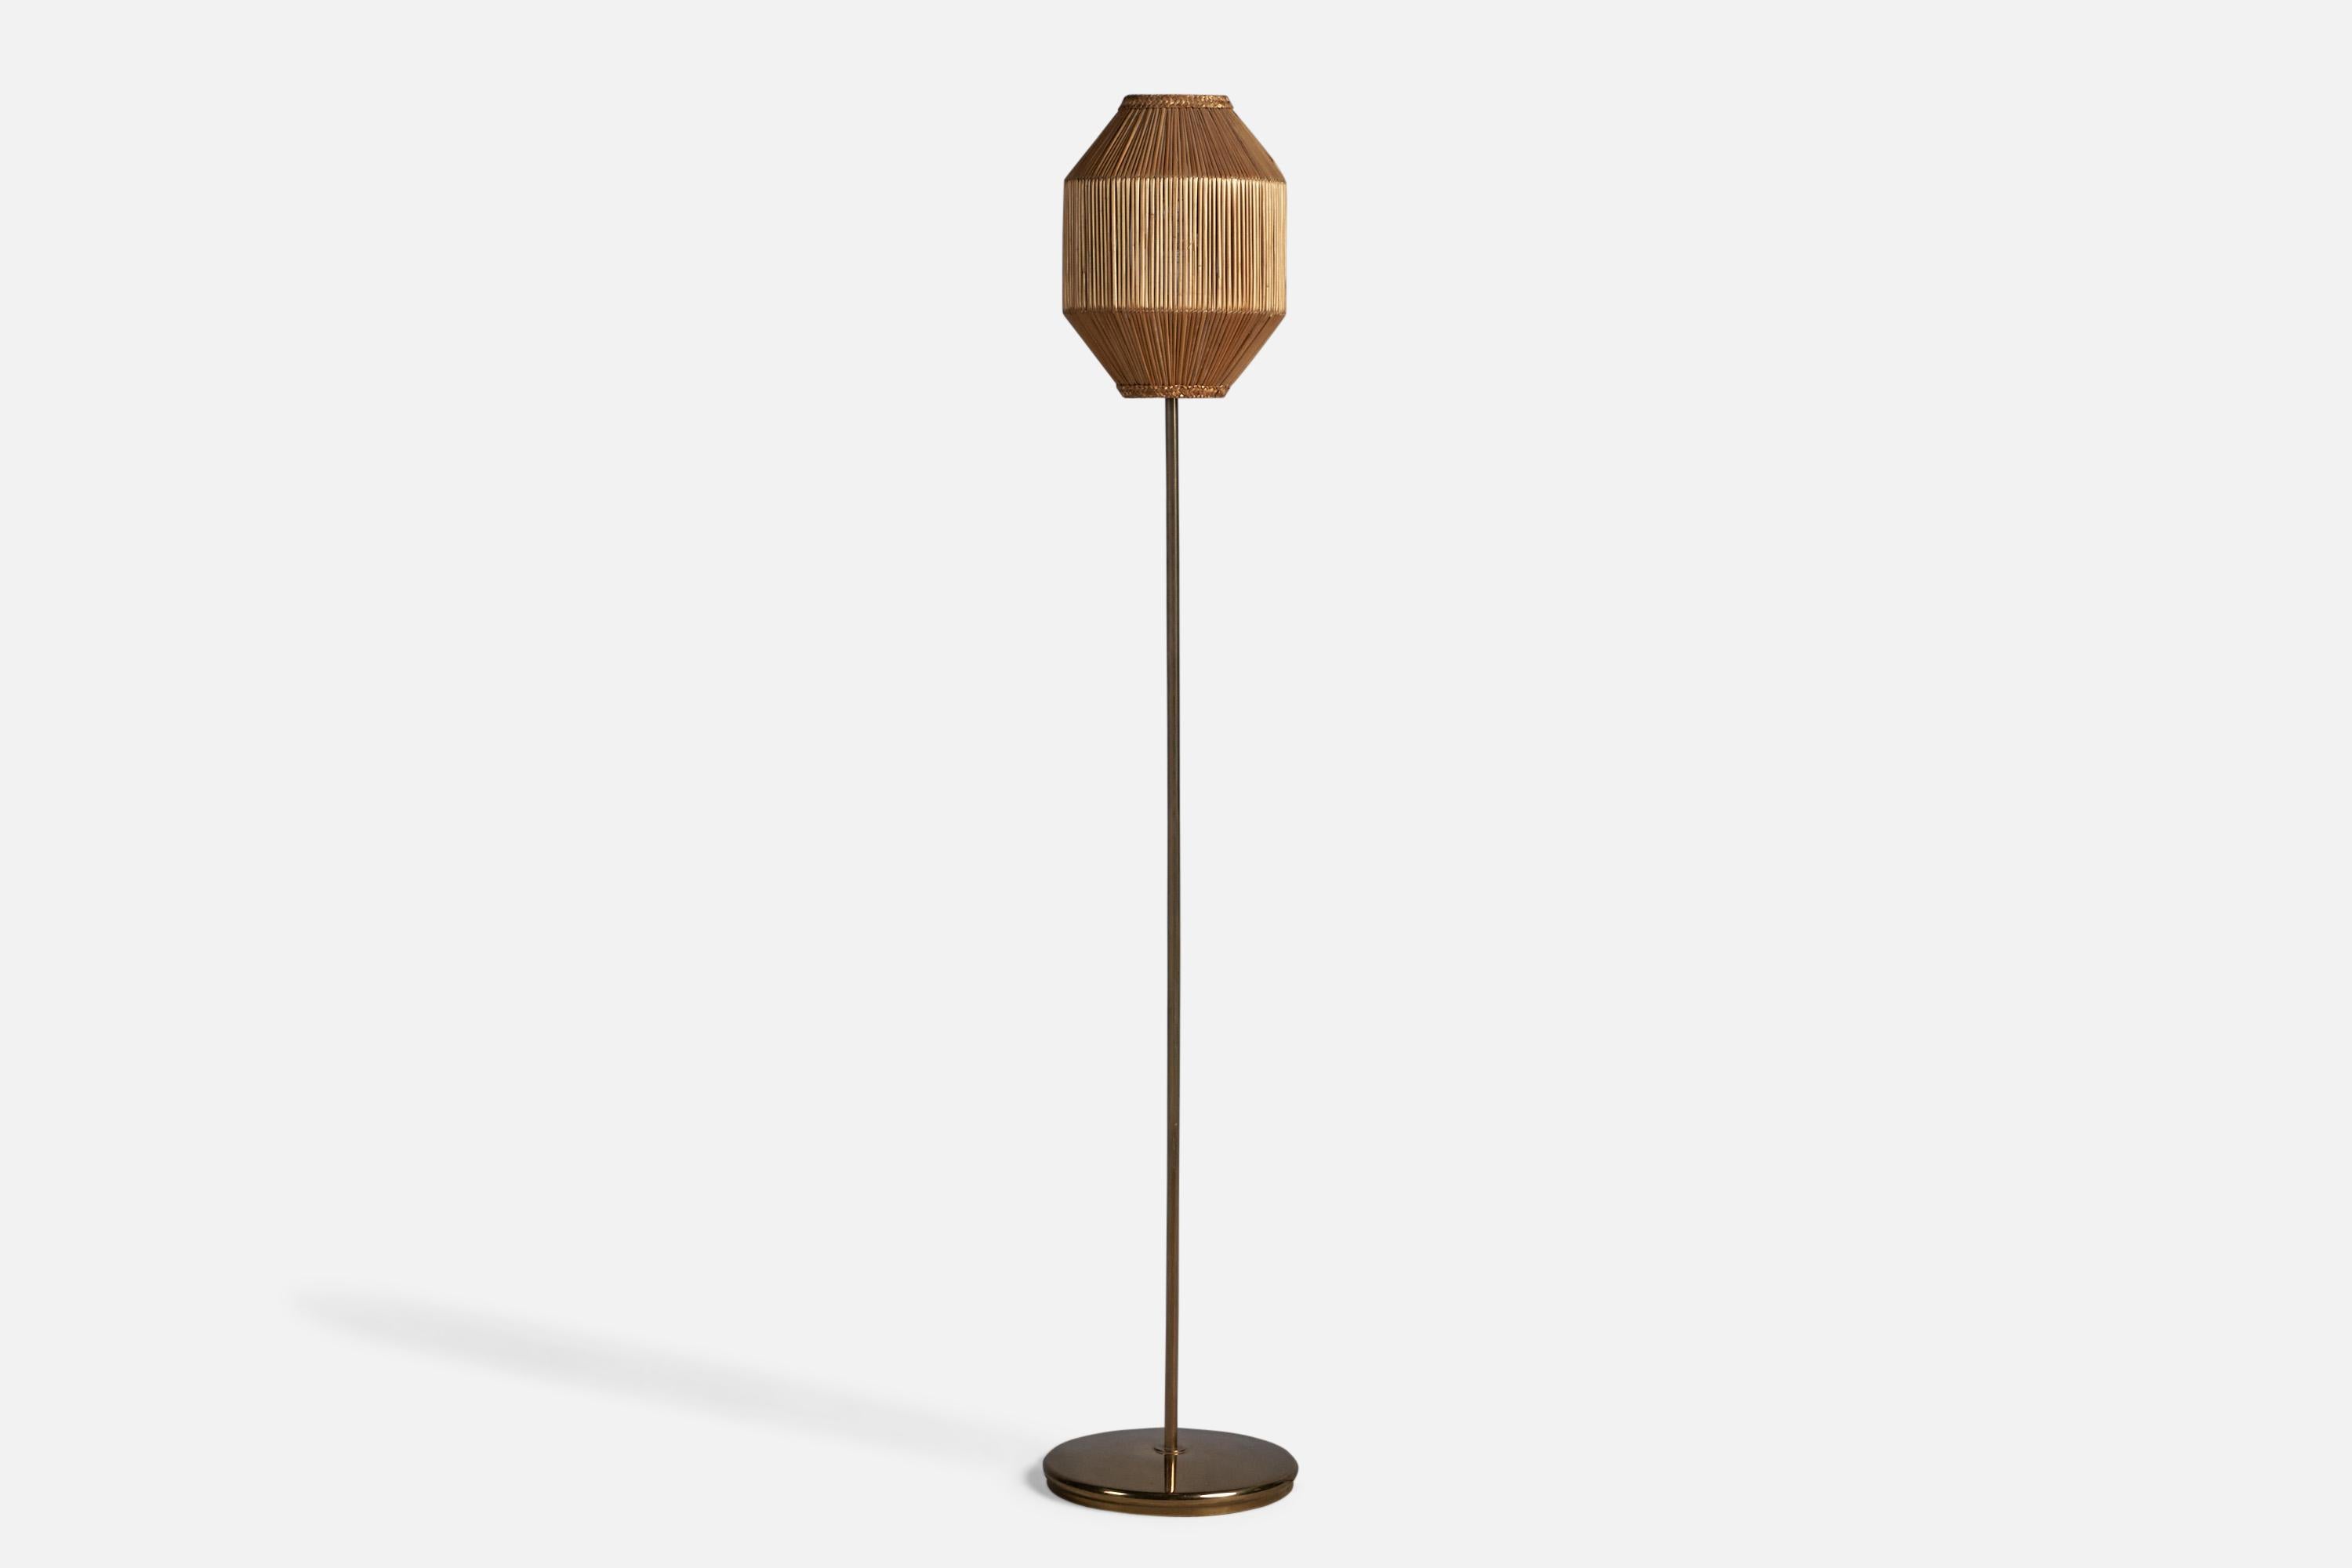 Eine Stehlampe aus Messing und Rattan, entworfen und hergestellt in Schweden, 1960er Jahre.

Gesamtabmessungen (Zoll): 53